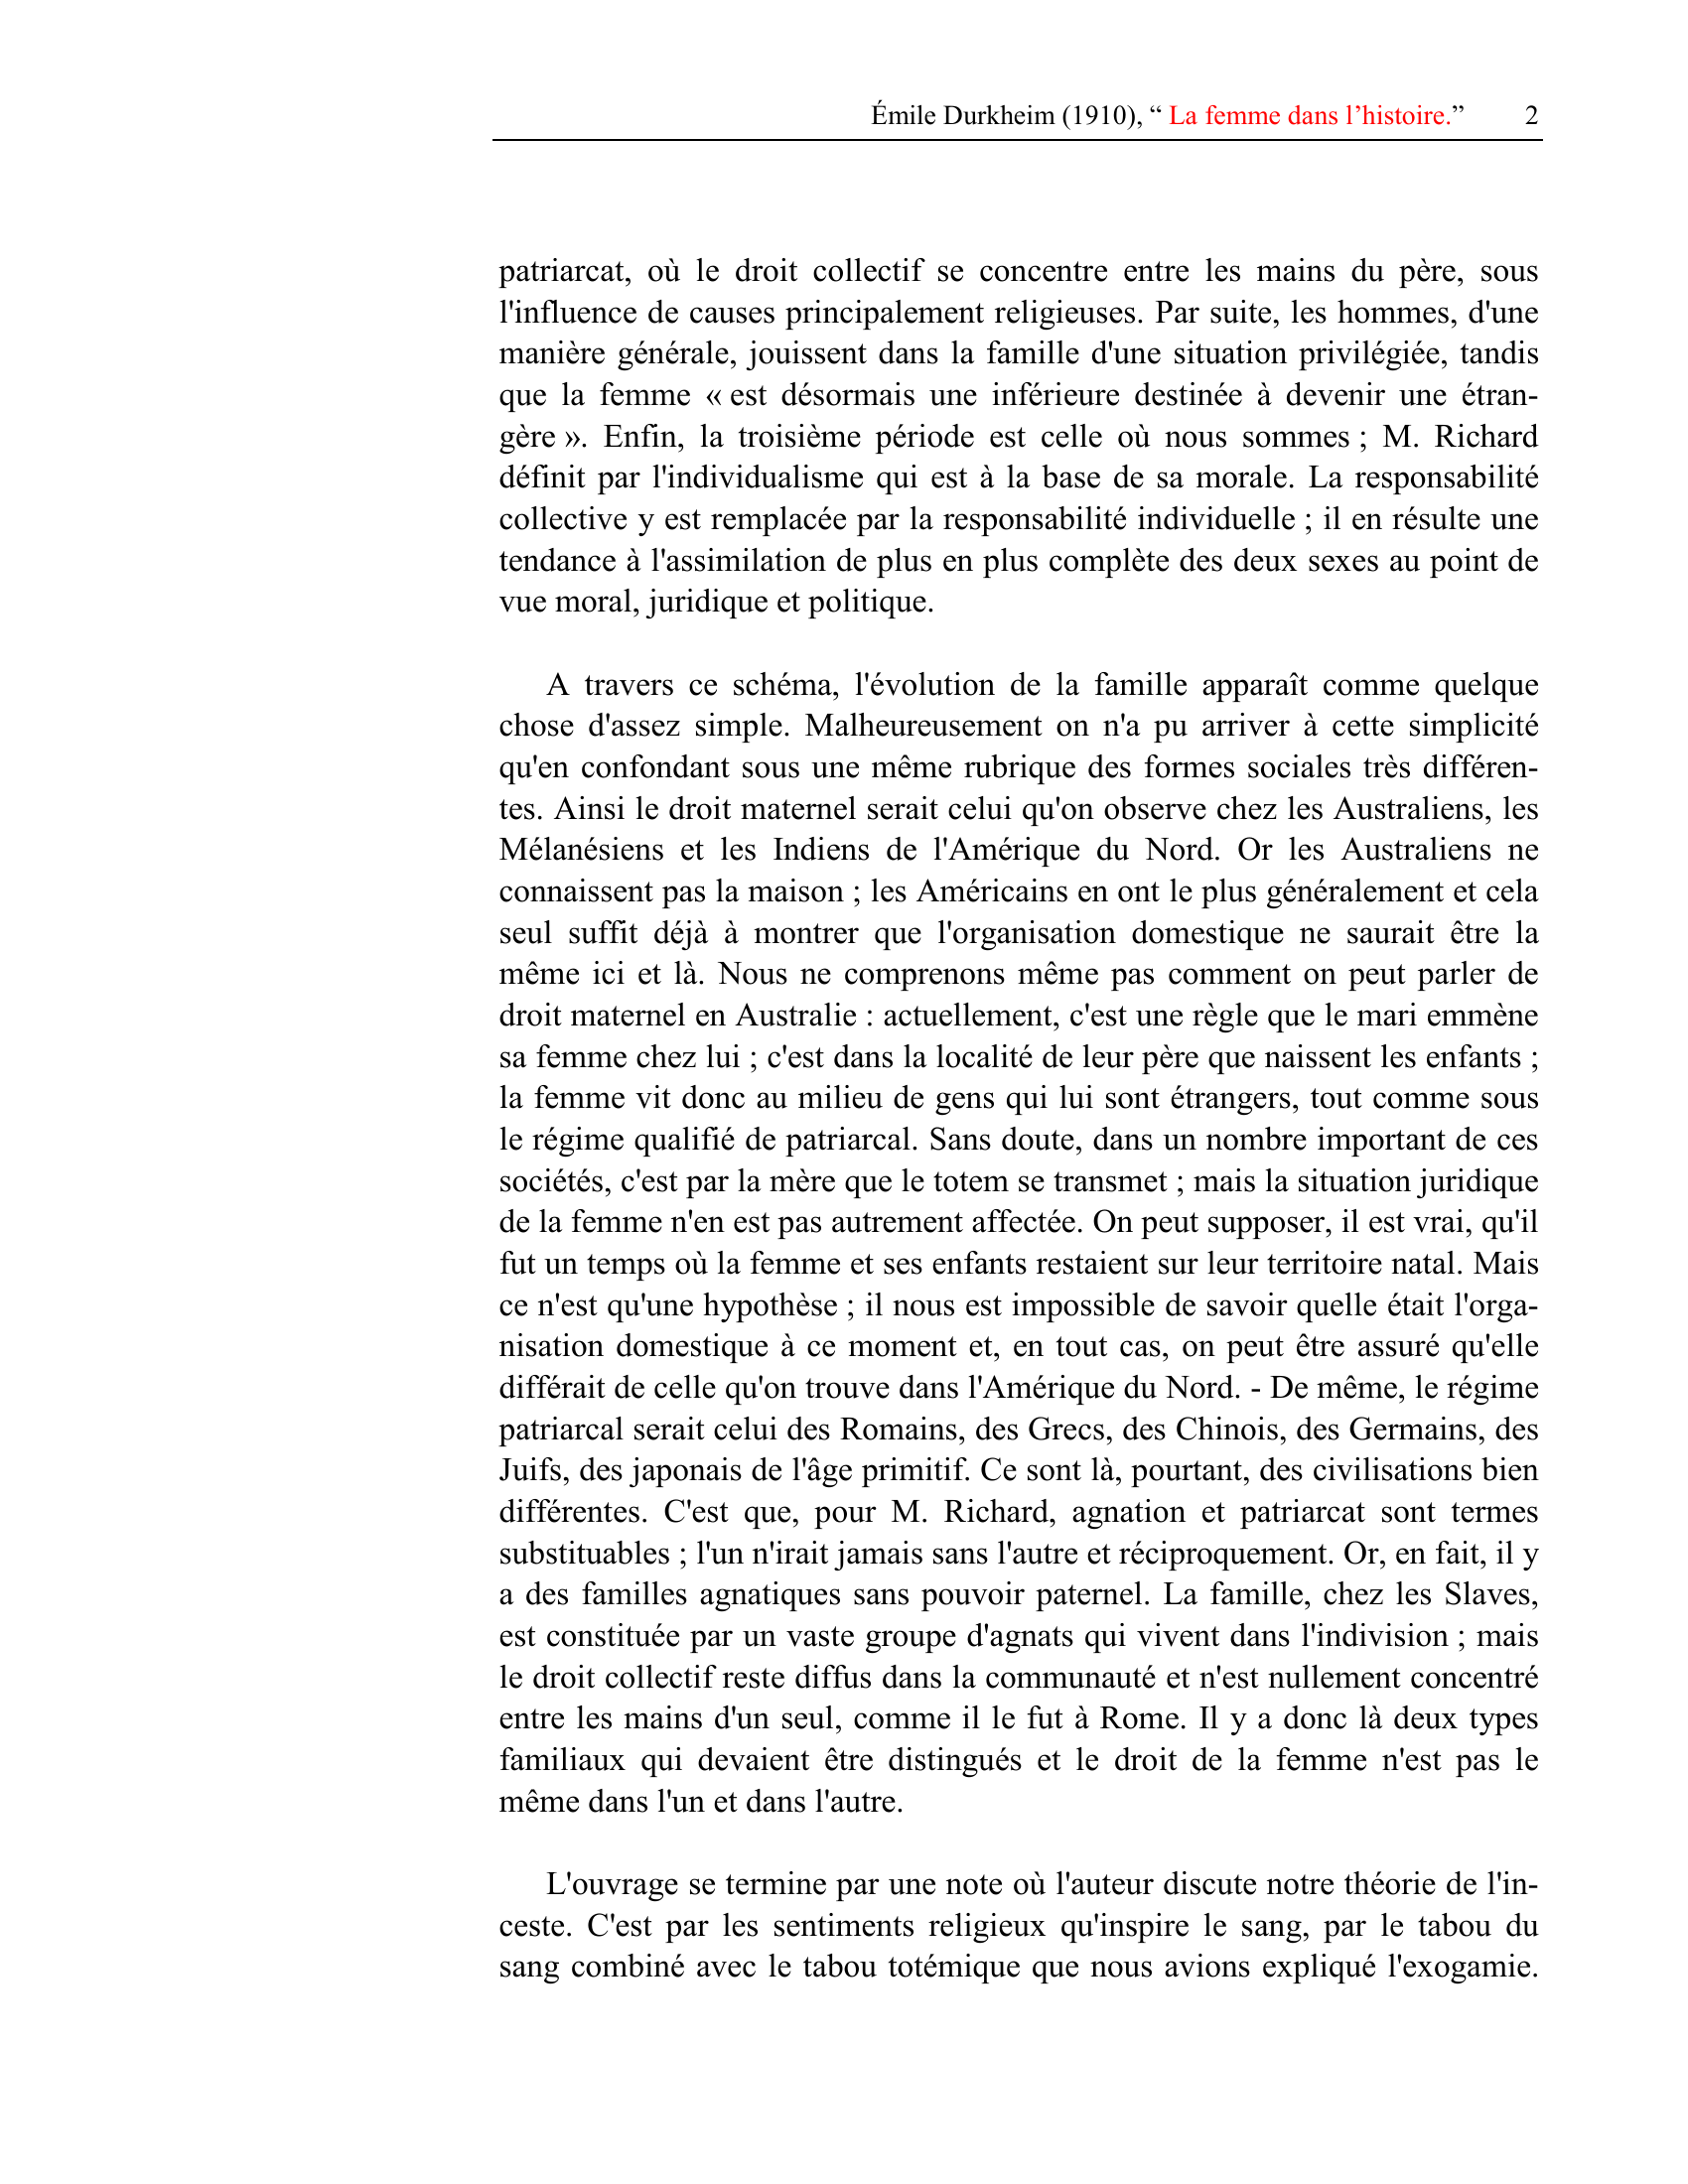 Prévisualisation du document " La femme dans
l'histoire "
par Émile Durkheim (1910)

Le problème que se pose M.